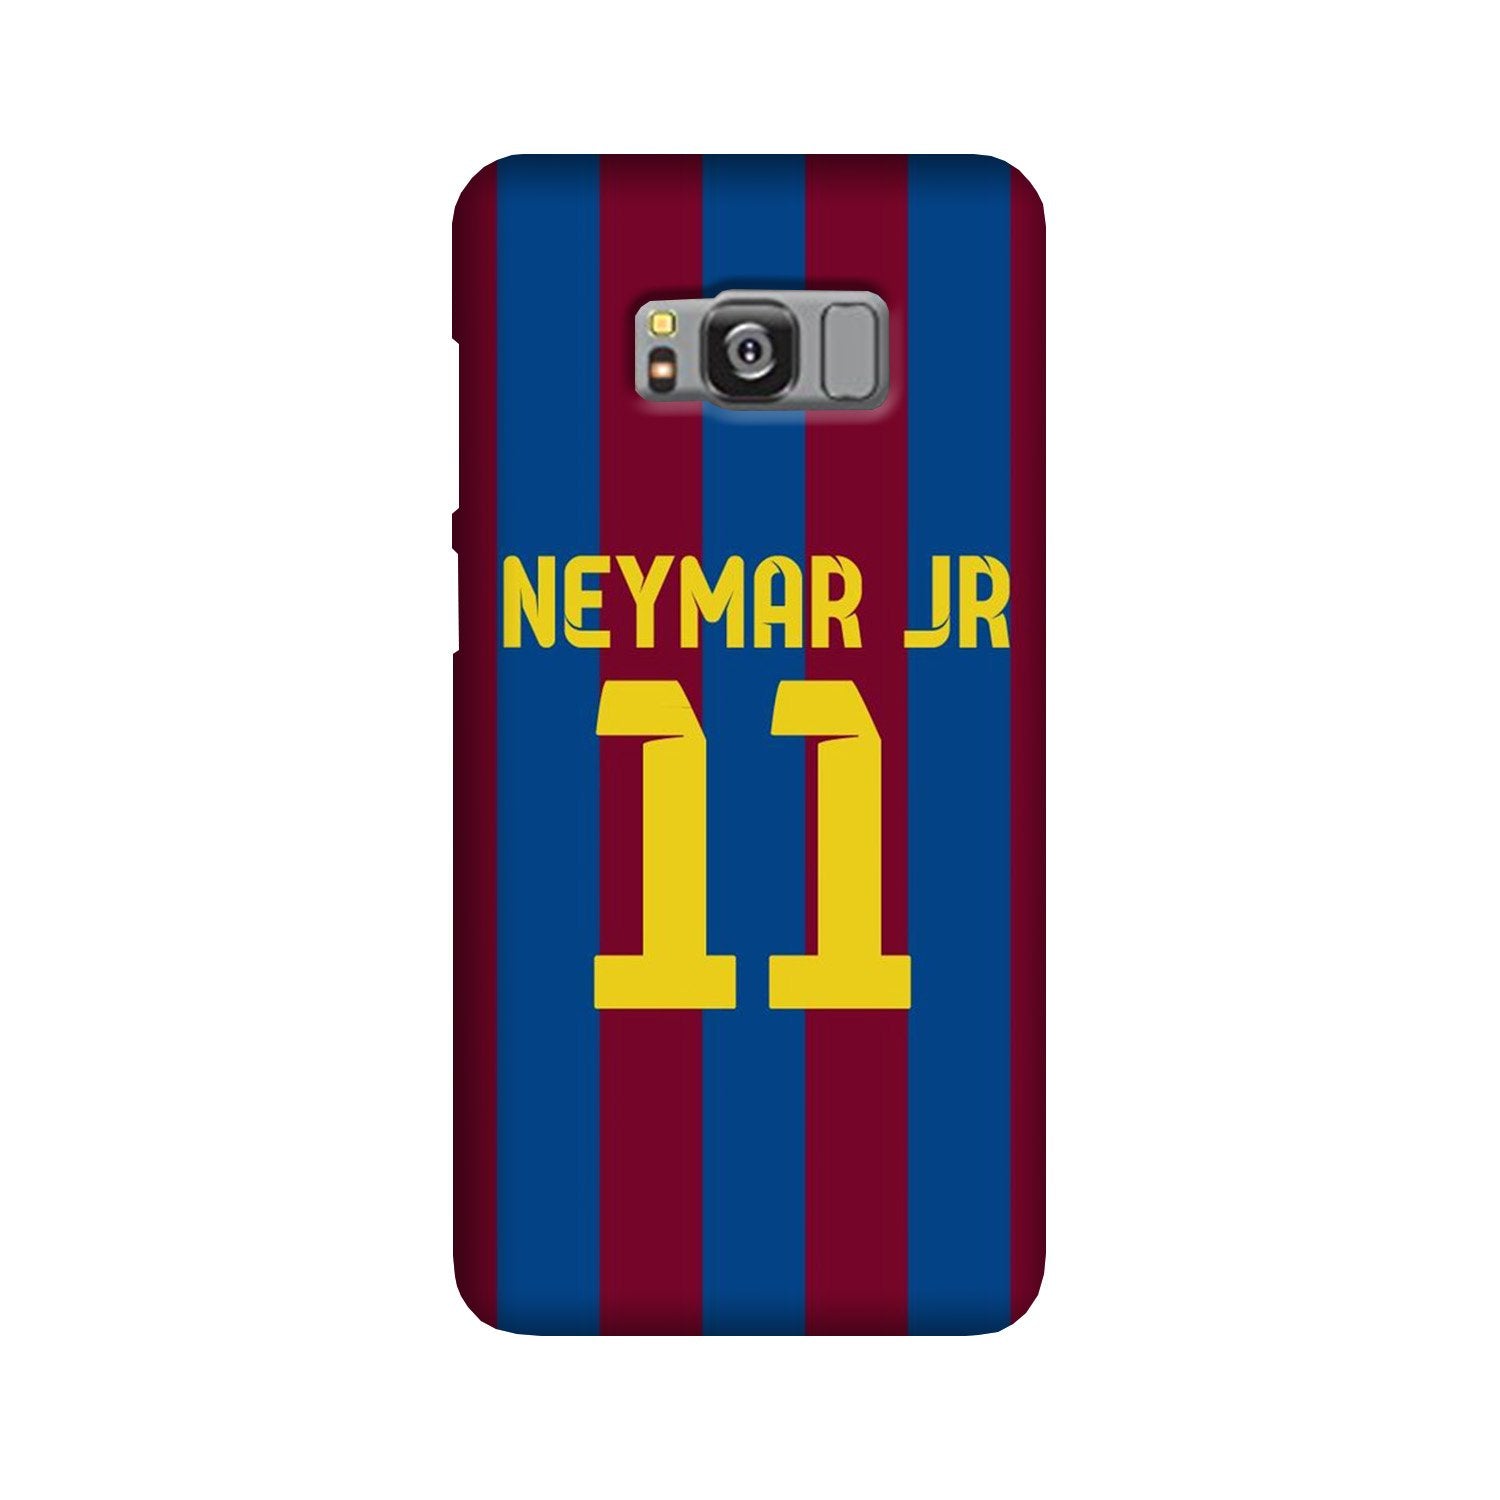 Neymar Jr Case for Galaxy S8(Design - 162)